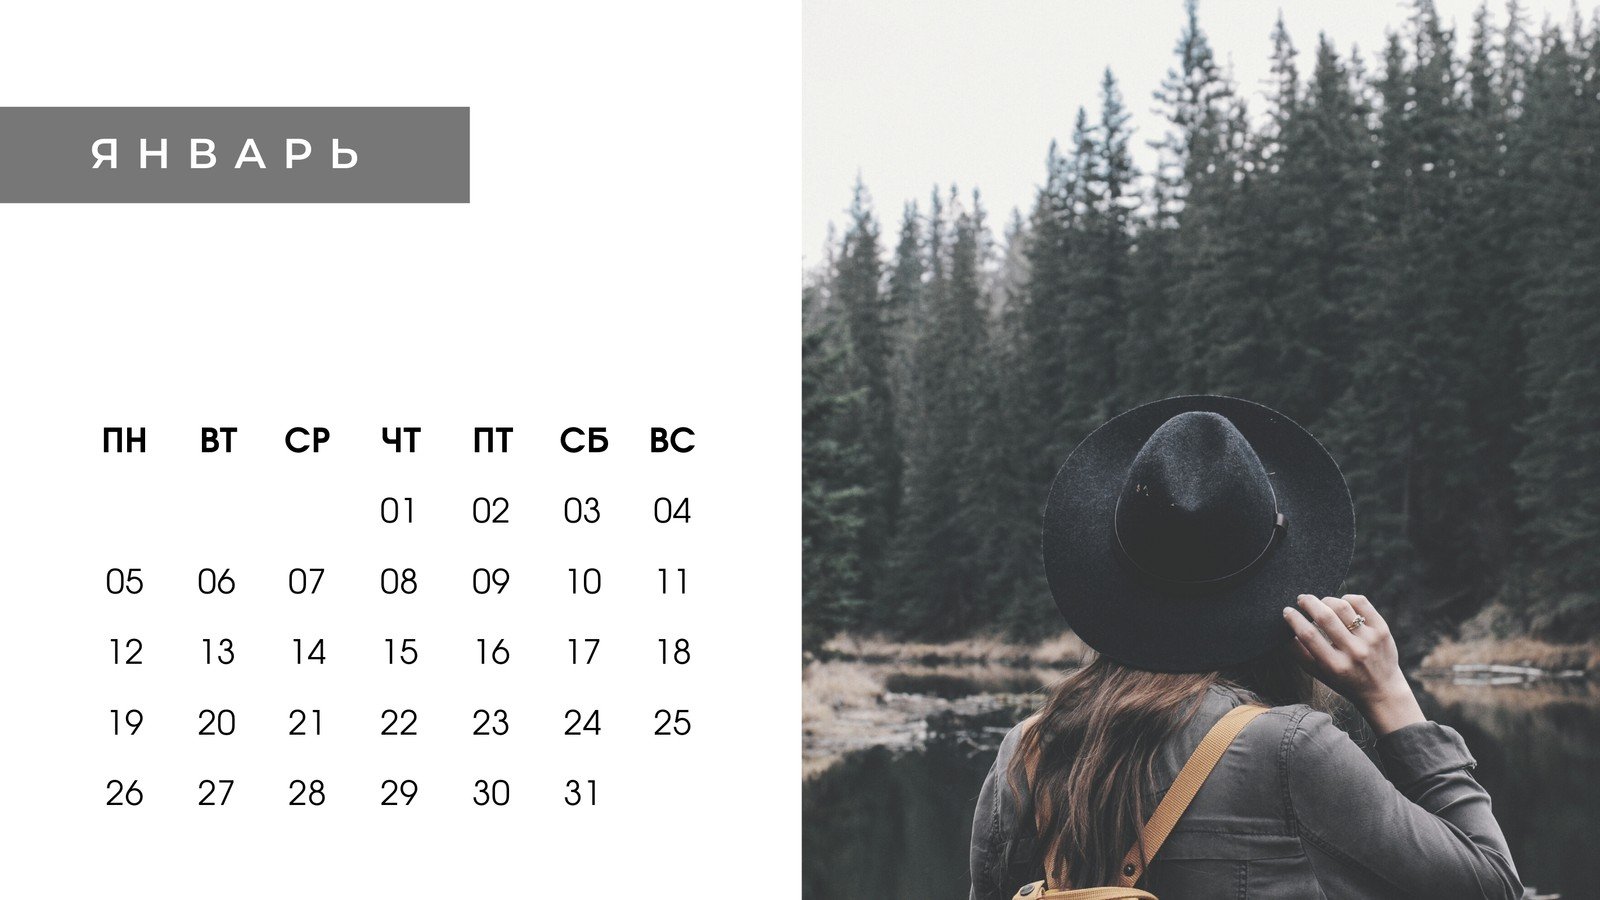 Дизайн календаря: скачать шаблон календаря бесплатно | Canva